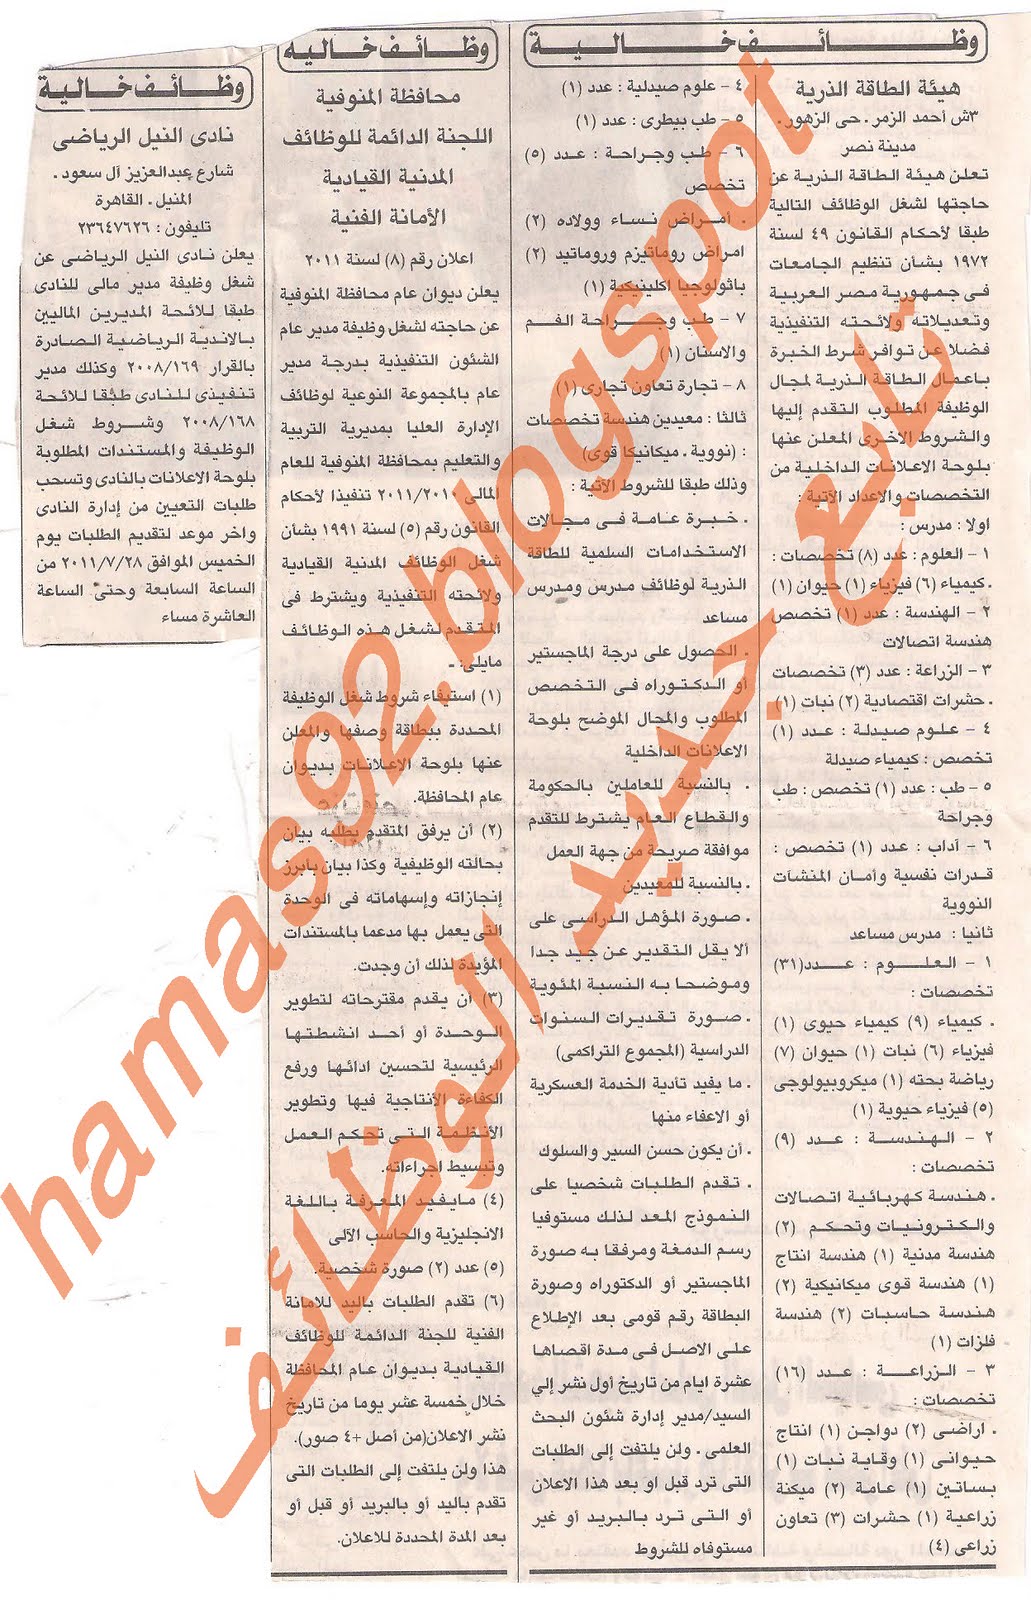 وظائف خالية من جريدة الرياض السعودية السبت 16 يوليو 2011 Picture+002